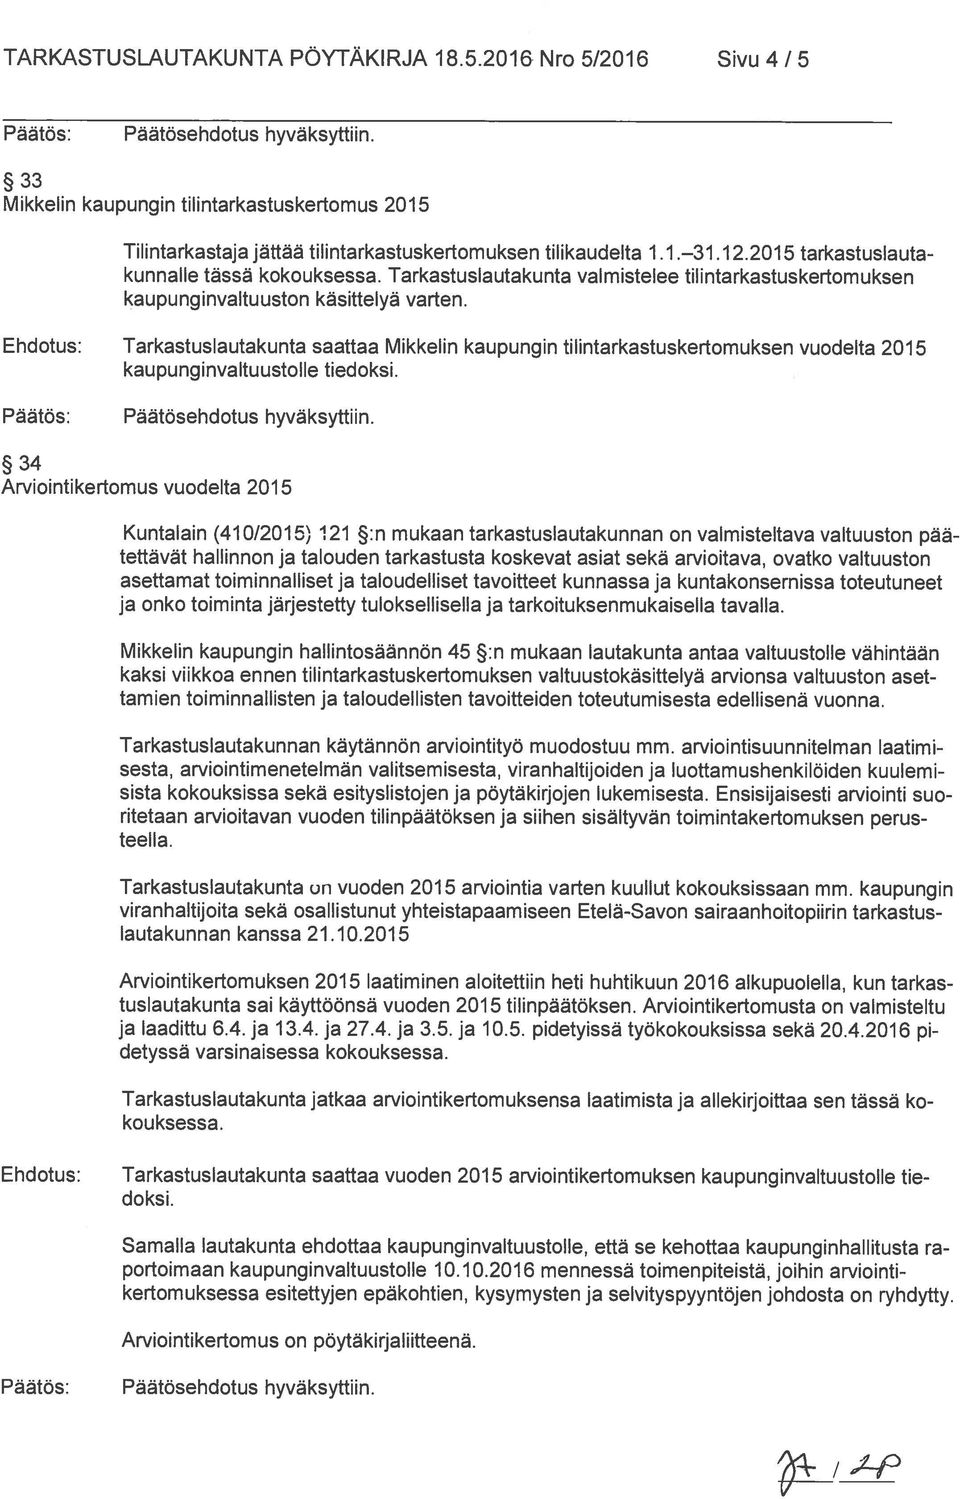 Tarkastuslautakunta saattaa Mikkelin kaupungin tilintarkastuskertomuksen vuodelta 2015 kaupunginvaltuustolle tiedoksi.